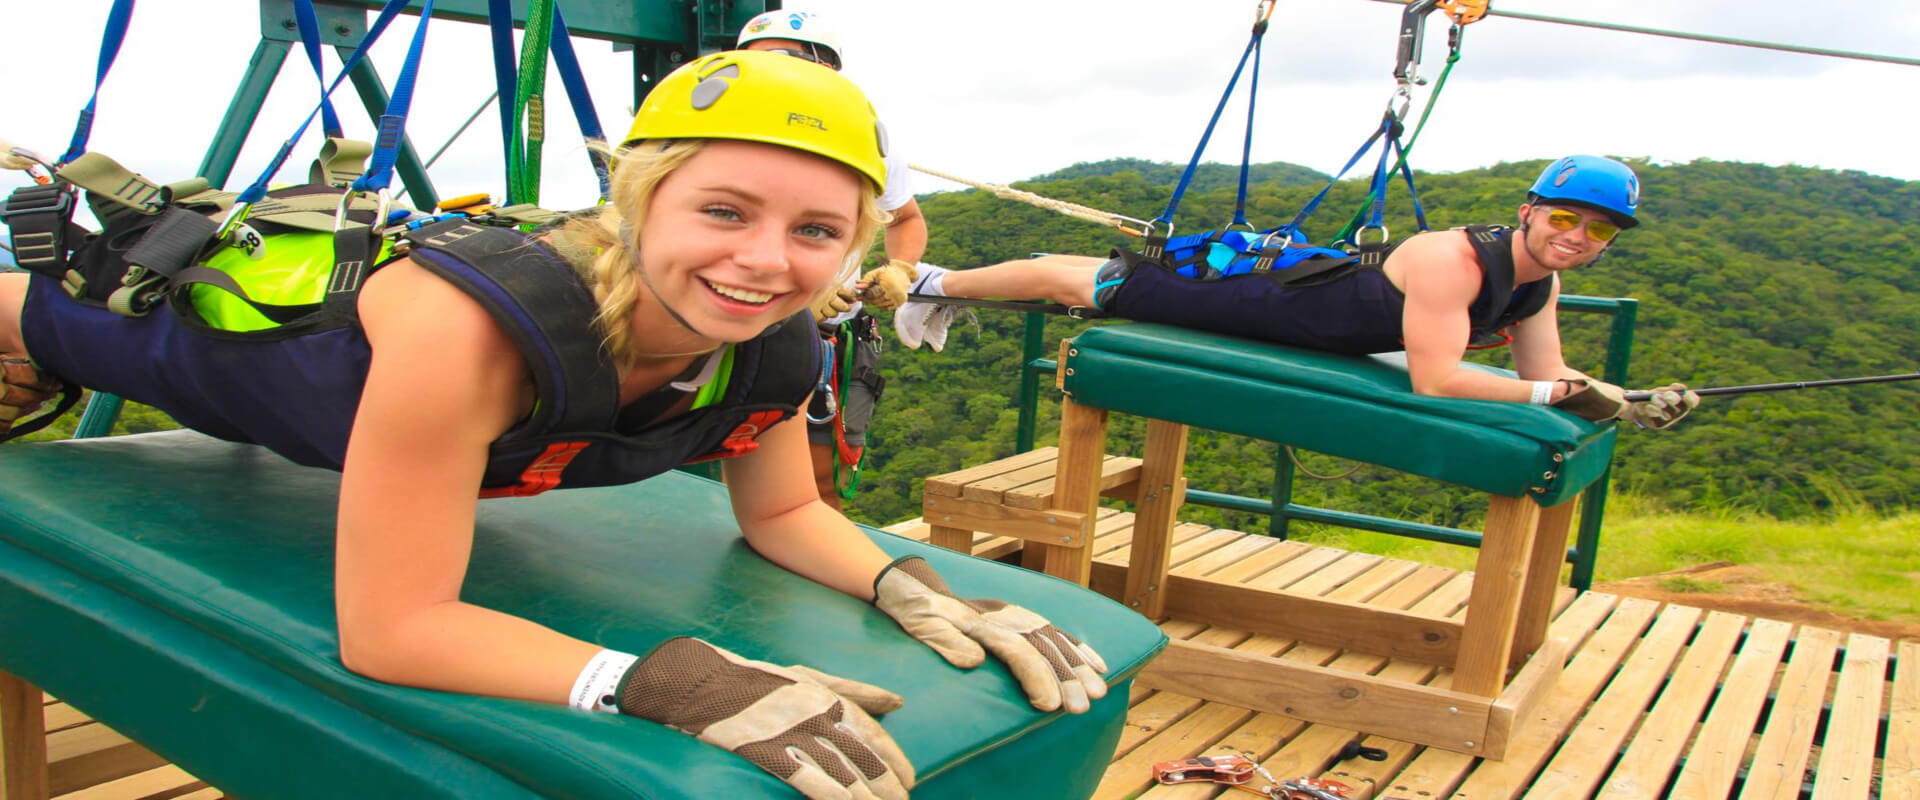 Diamante Adventure Park - Pase aéreo | Costa Rica Jade Tours